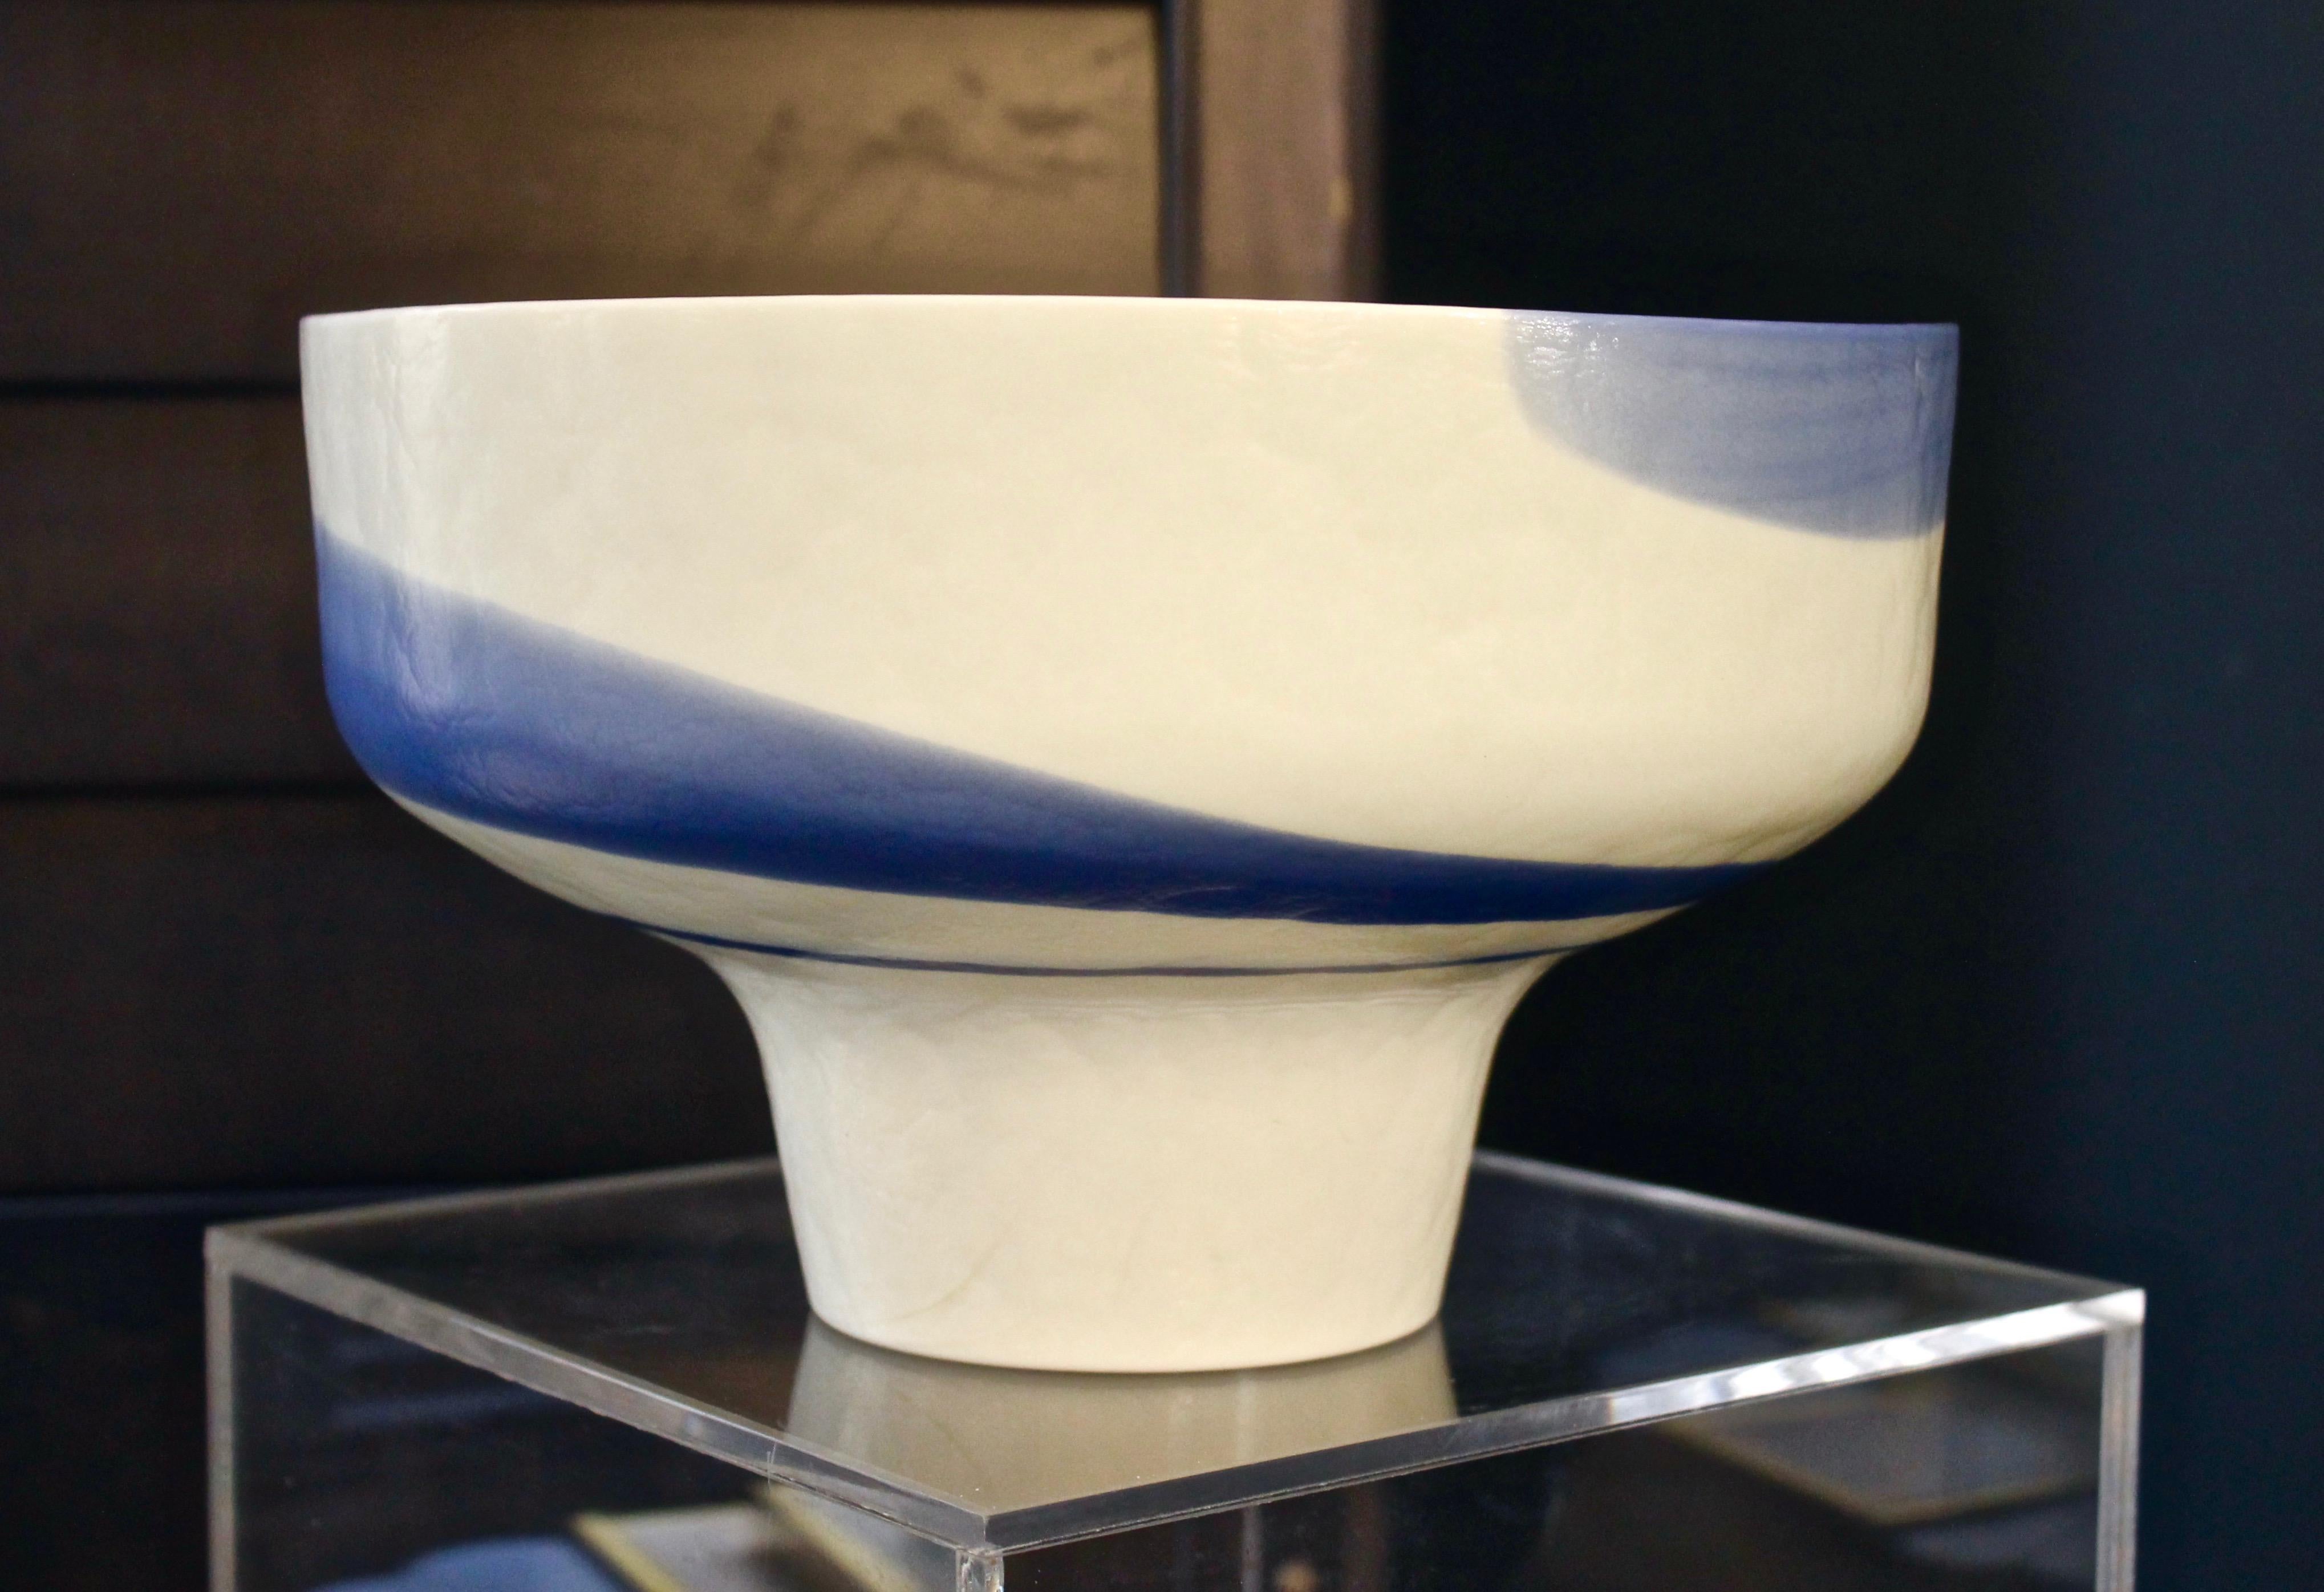 Mid-Century organische moderne runde Schale in dicken Murano-Glas, speziell für das Hotel des Bains in Venedig gemacht, ein Paar zur Verfügung steht, realisiert in Elfenbein Creme weiß Glaspaste, verziert mit hellen aqua blauen Strudeln, die Dicke